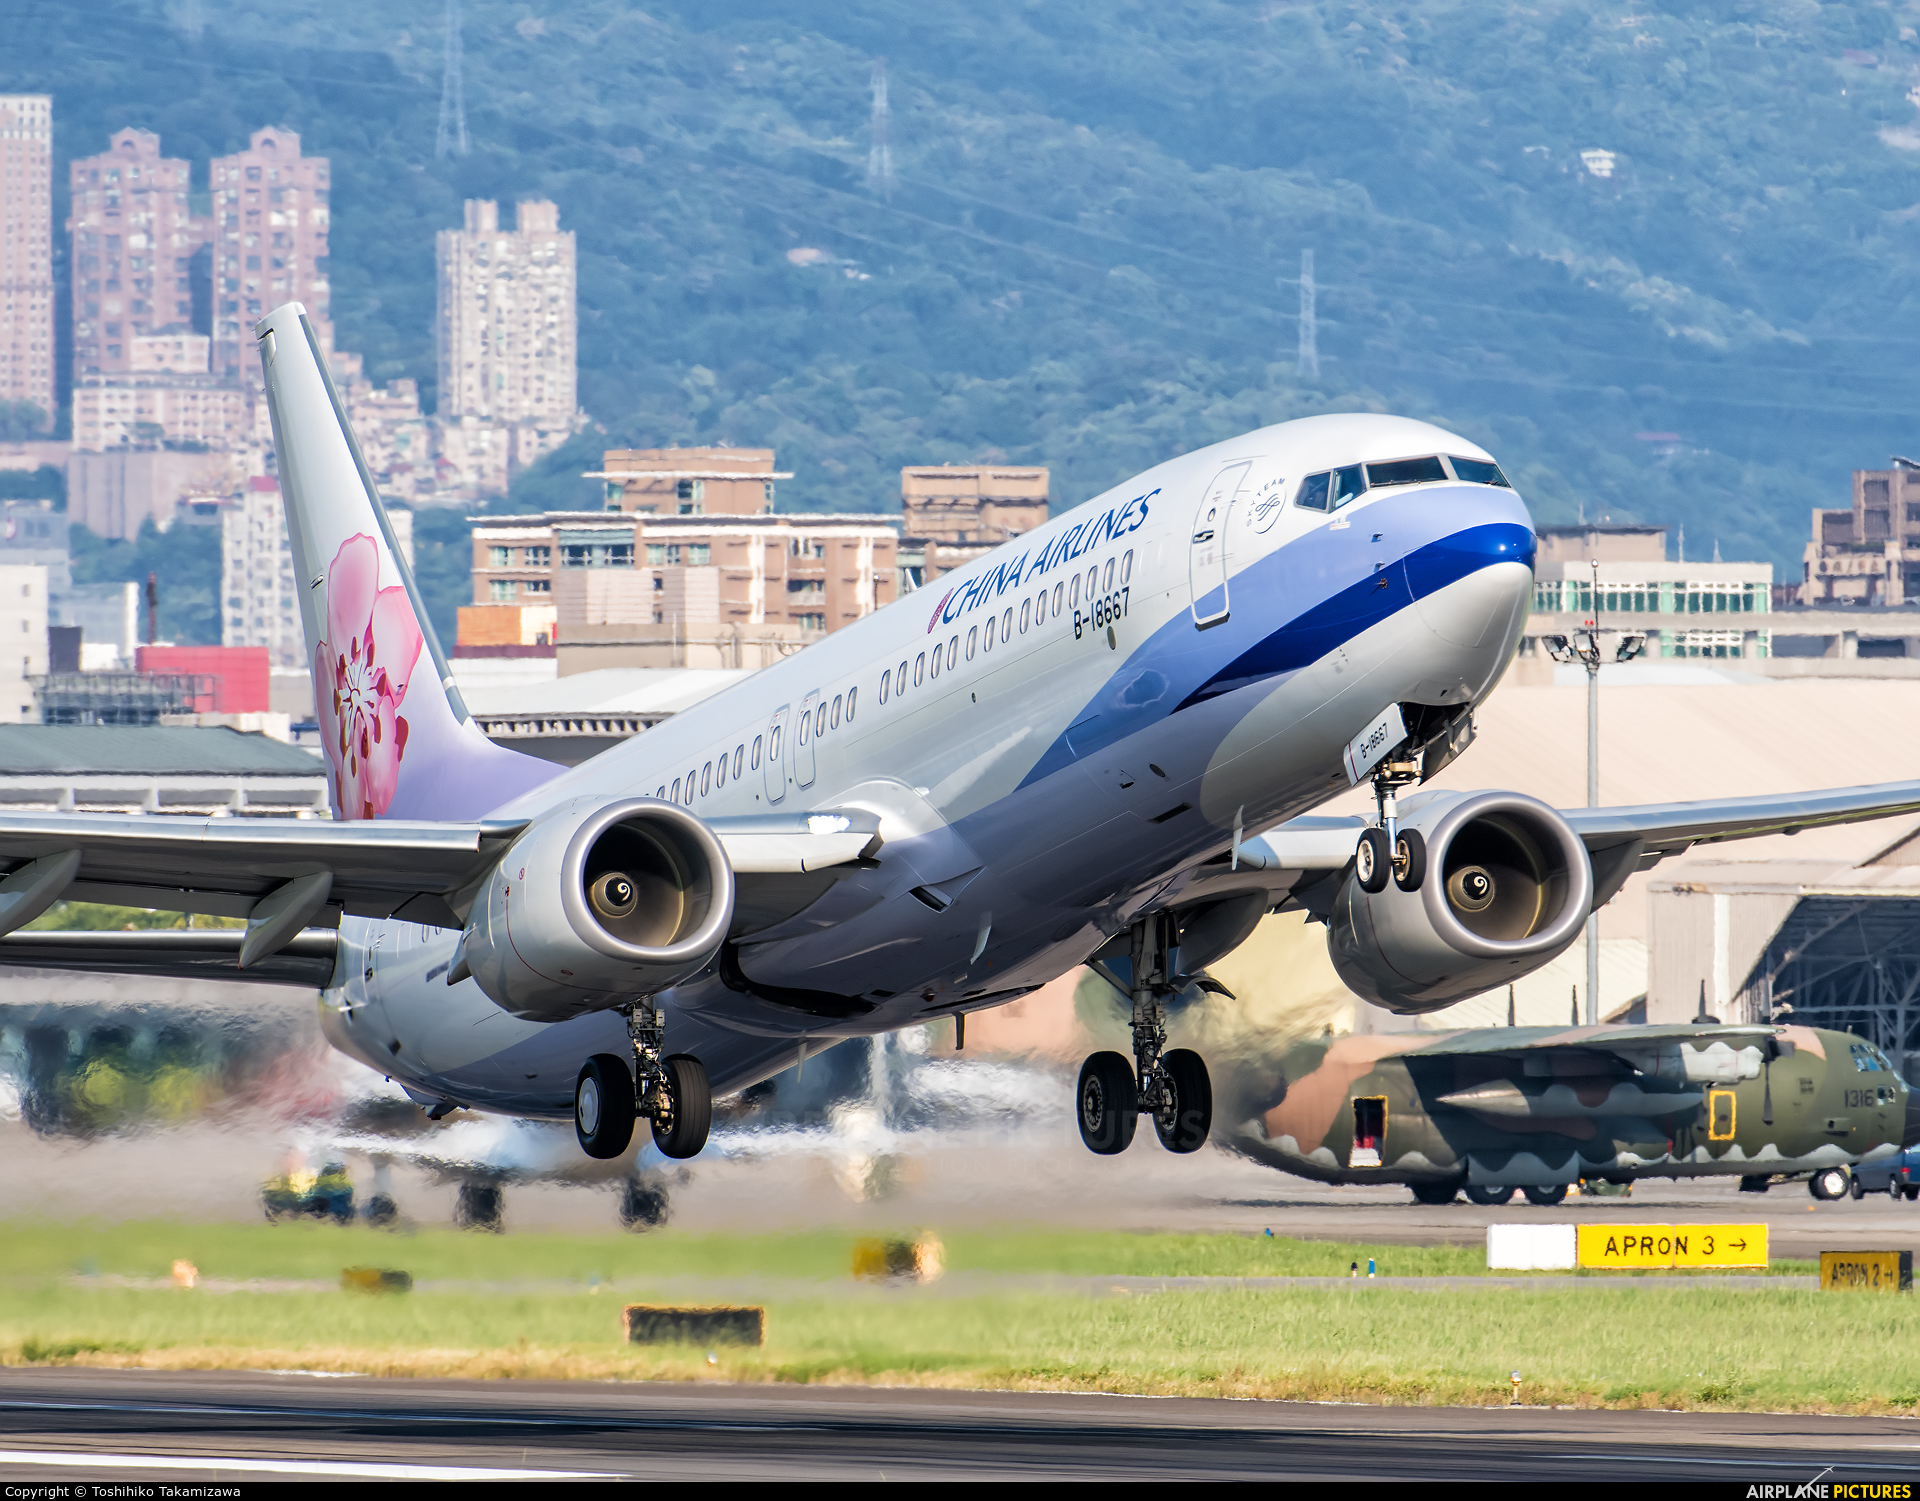 China Airlines B-18667 aircraft at Taipei Sung Shan/Songshan Airport